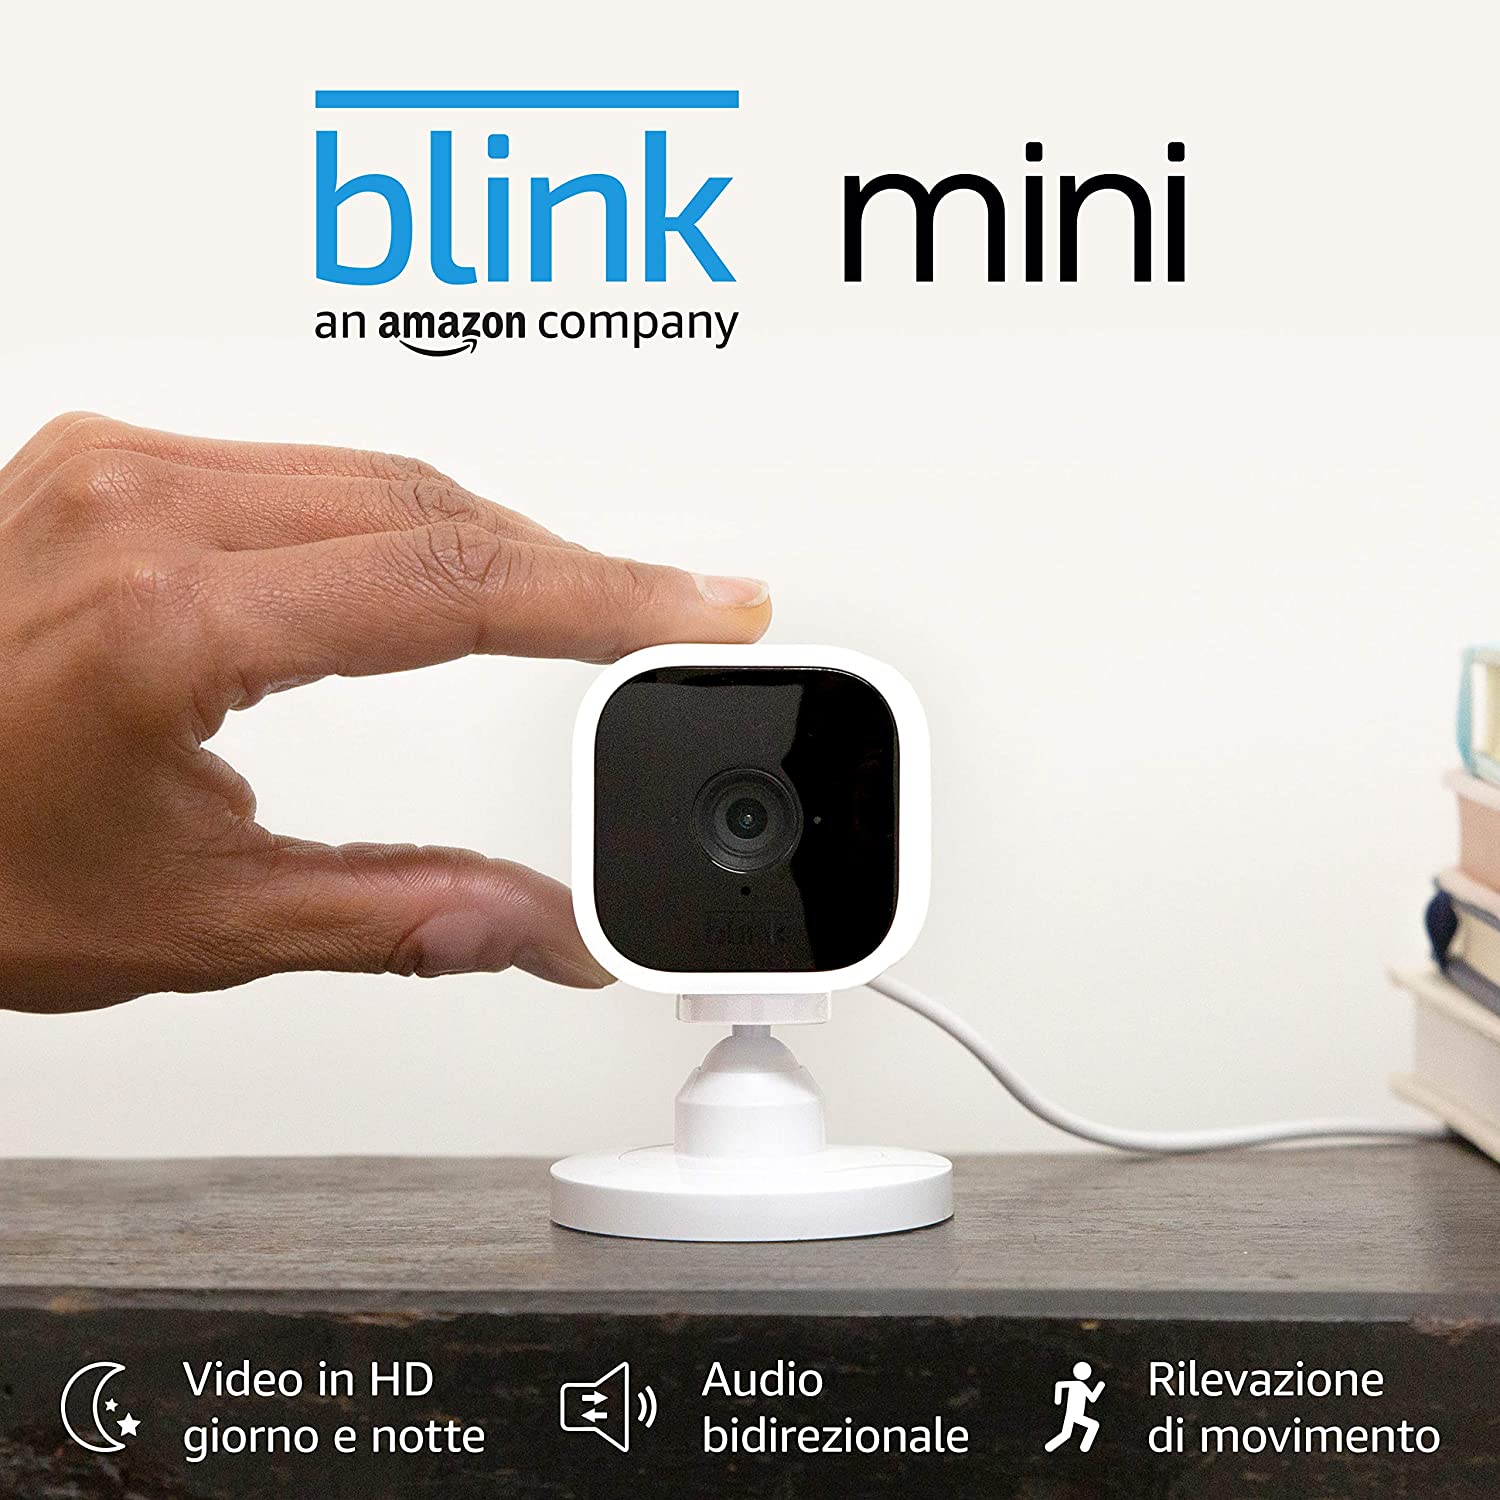 Amazon Blink Mini è la telecamera di sicurezza compatta e completa a 39,99 euro